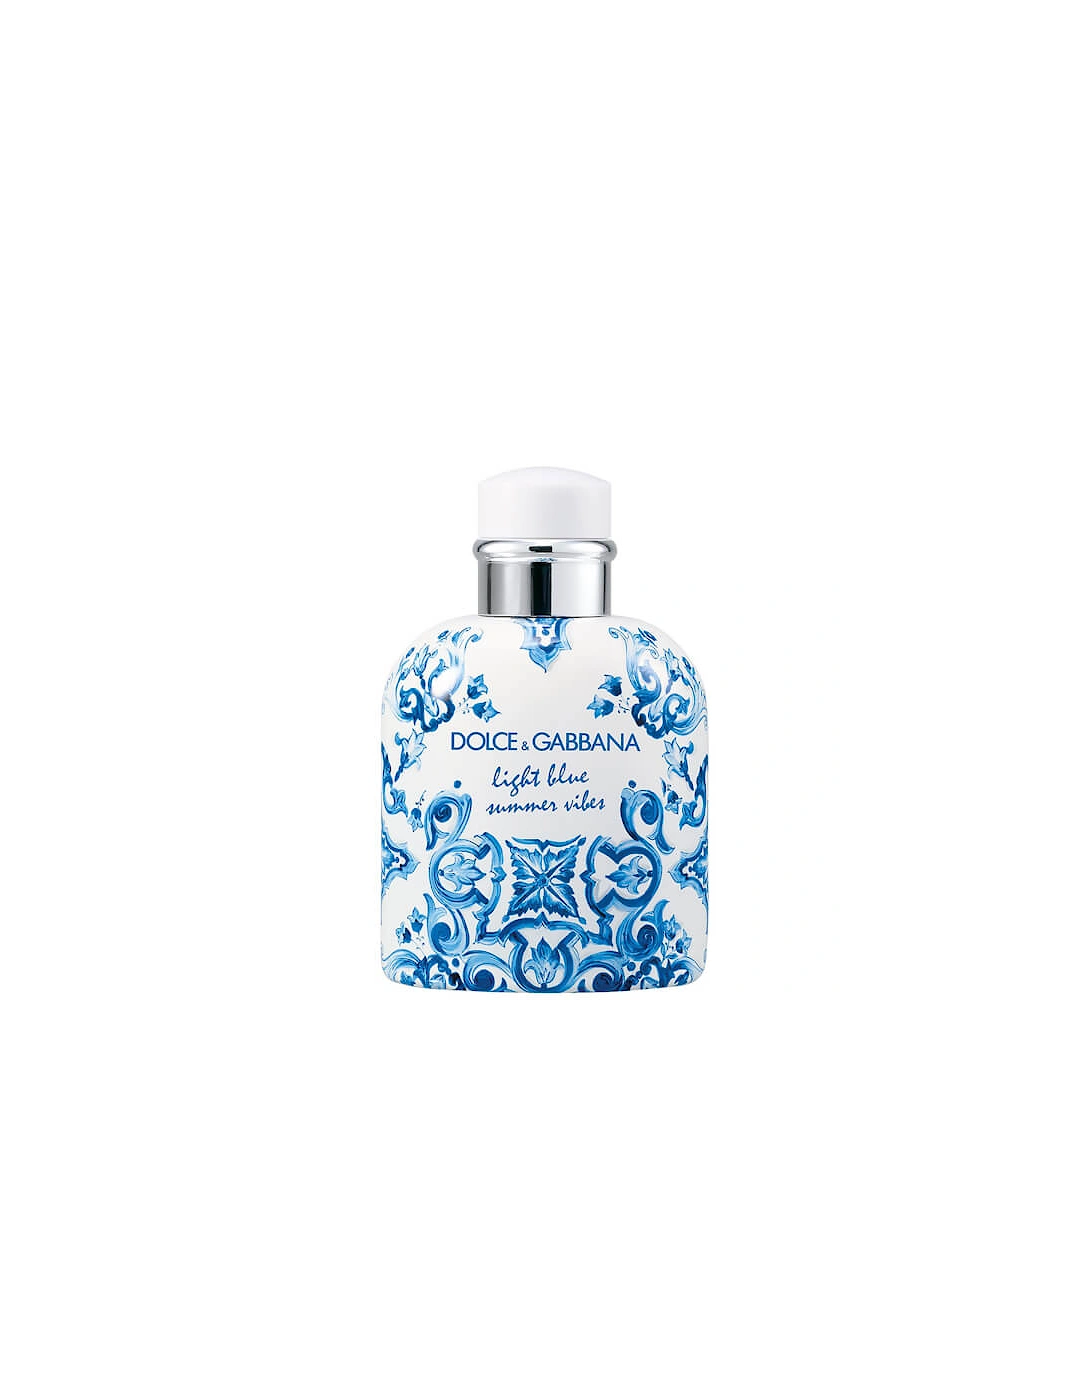 Dolce&Gabbana Light Blue Summer Vibes Pour Homme Eau de Toilette 125ml, 2 of 1